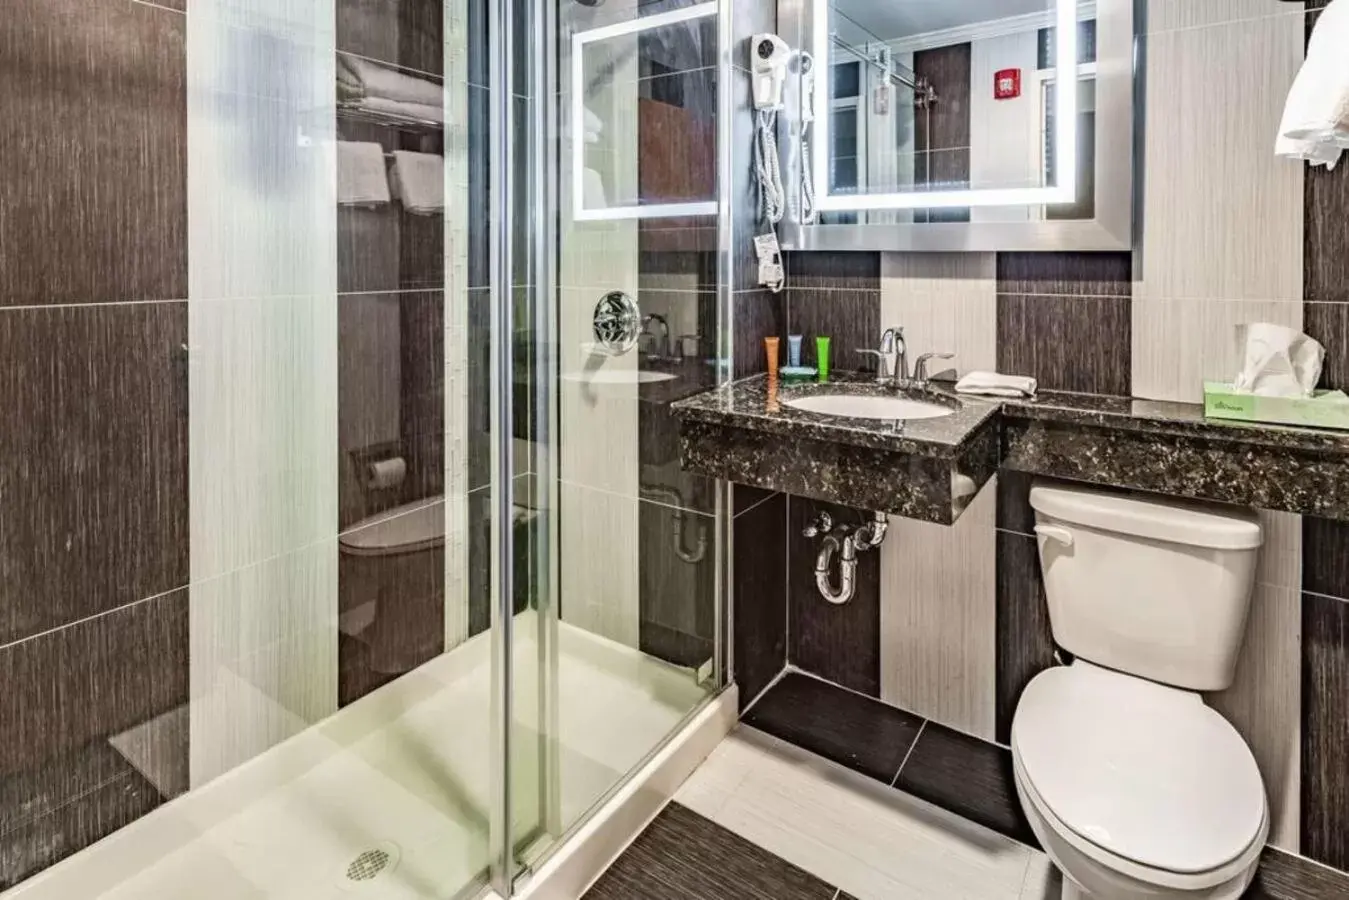 Bathroom in Umbrella Hotel Brooklyn